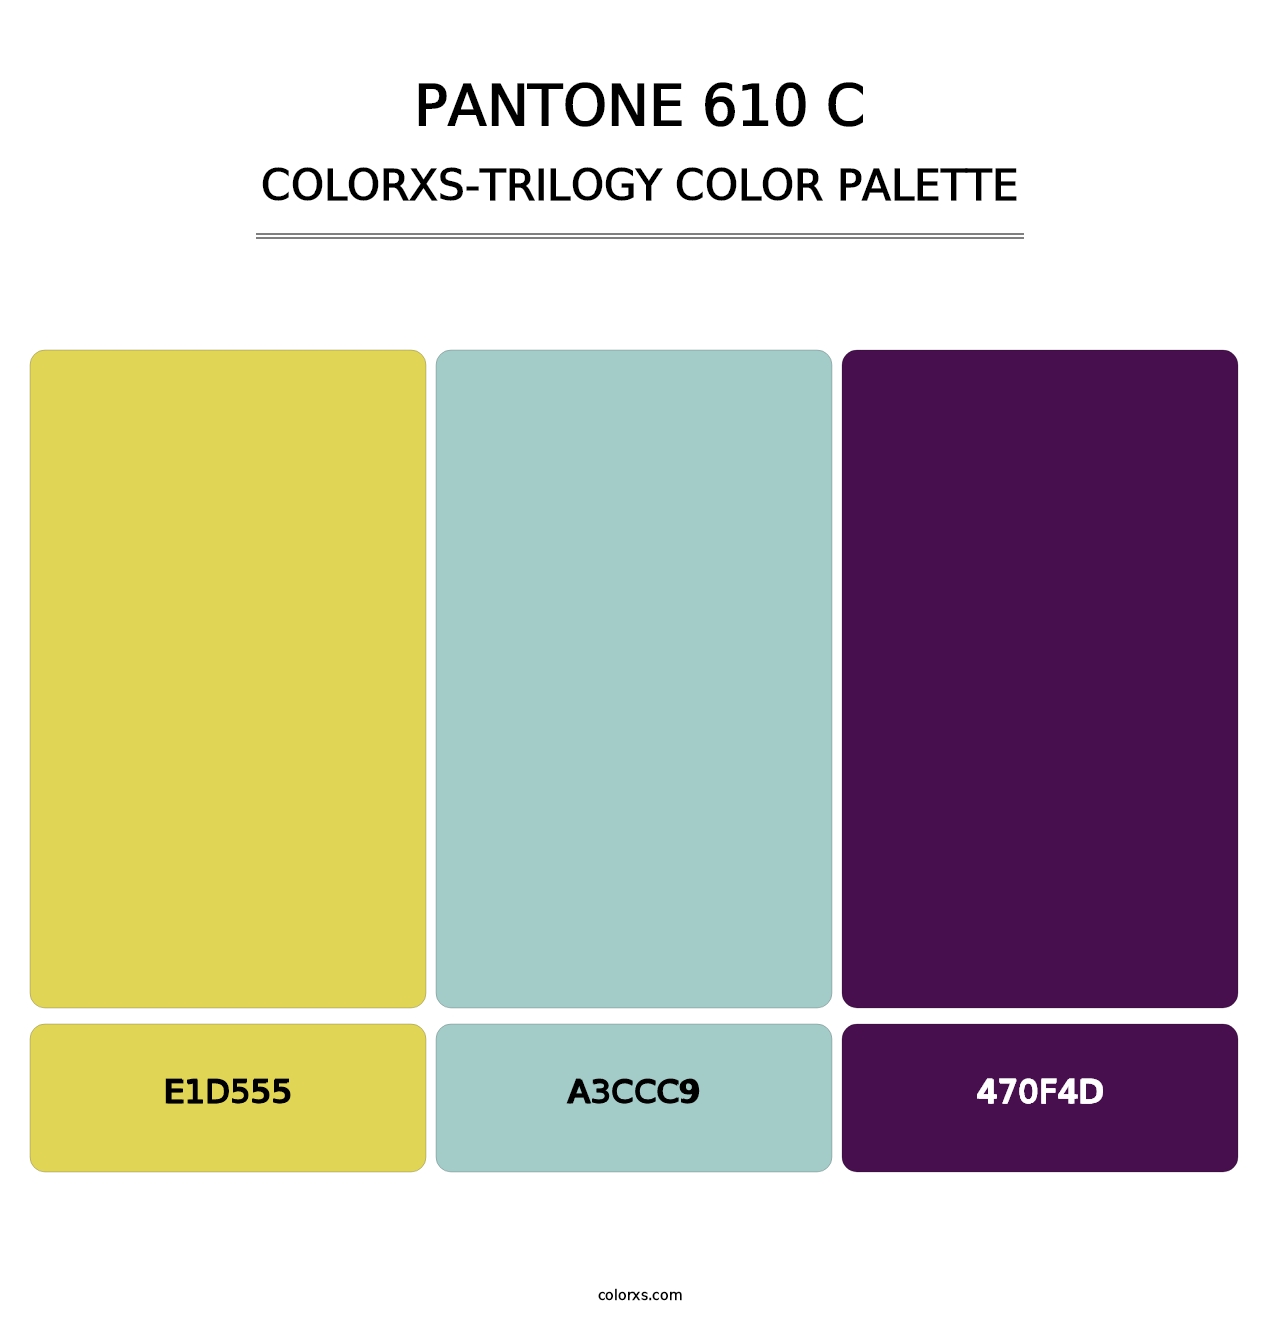 PANTONE 610 C - Colorxs Trilogy Palette